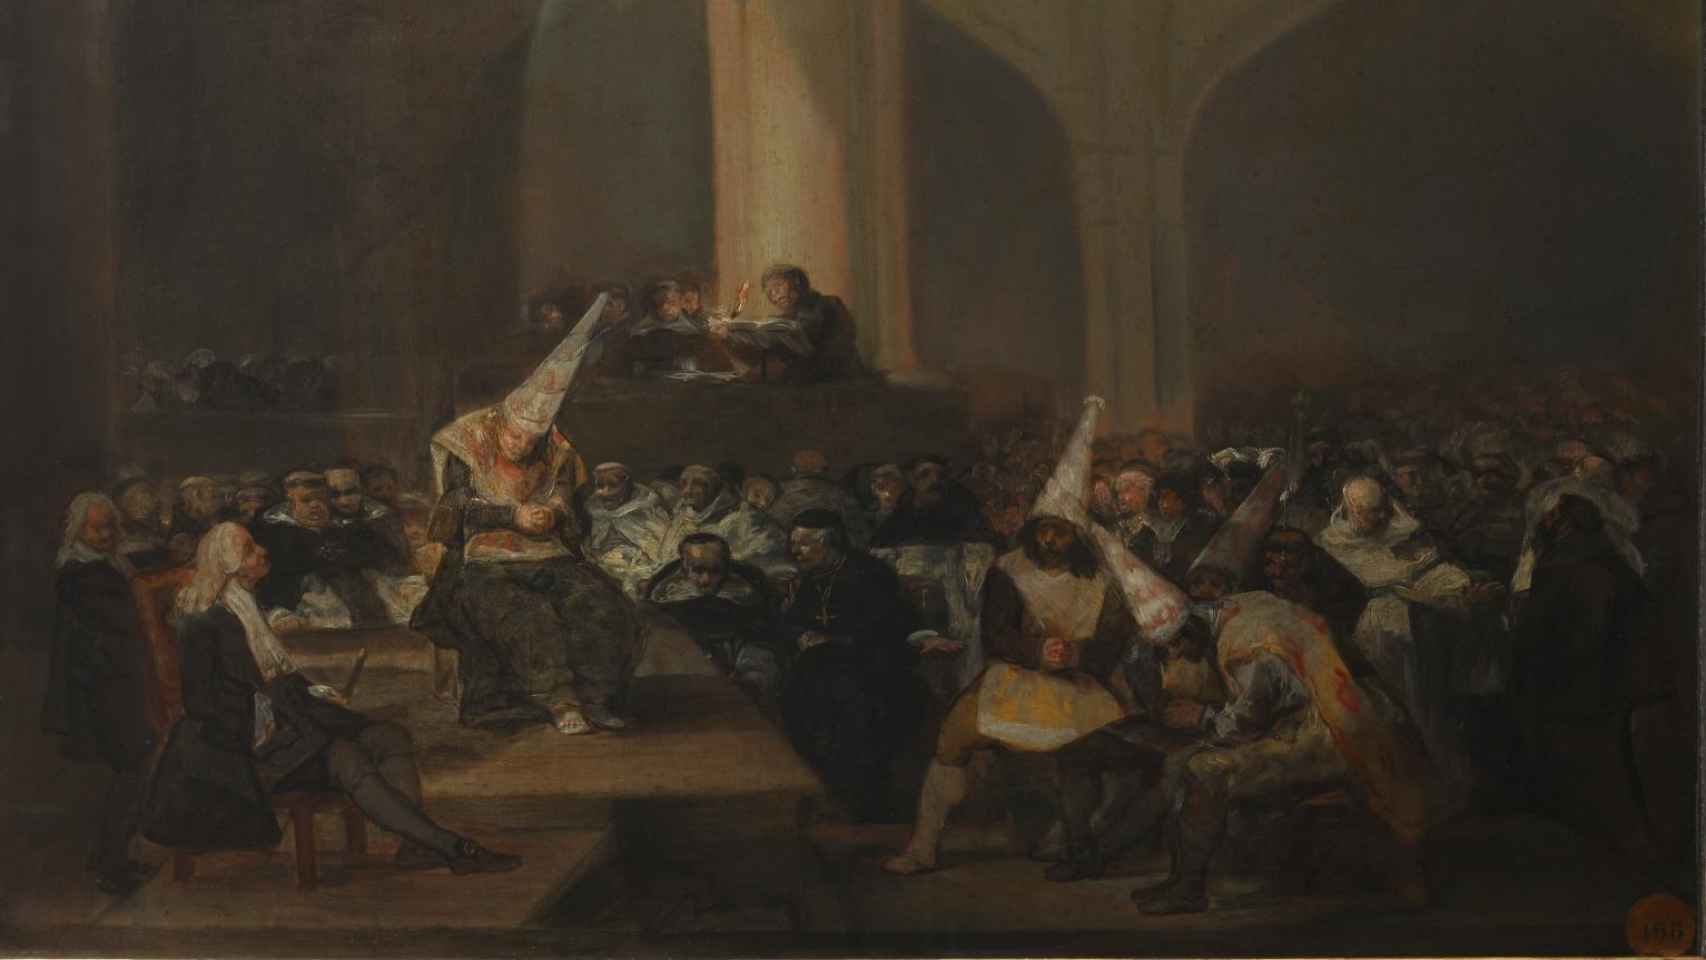 'Escena de Inquisición', de Francisco de Goya